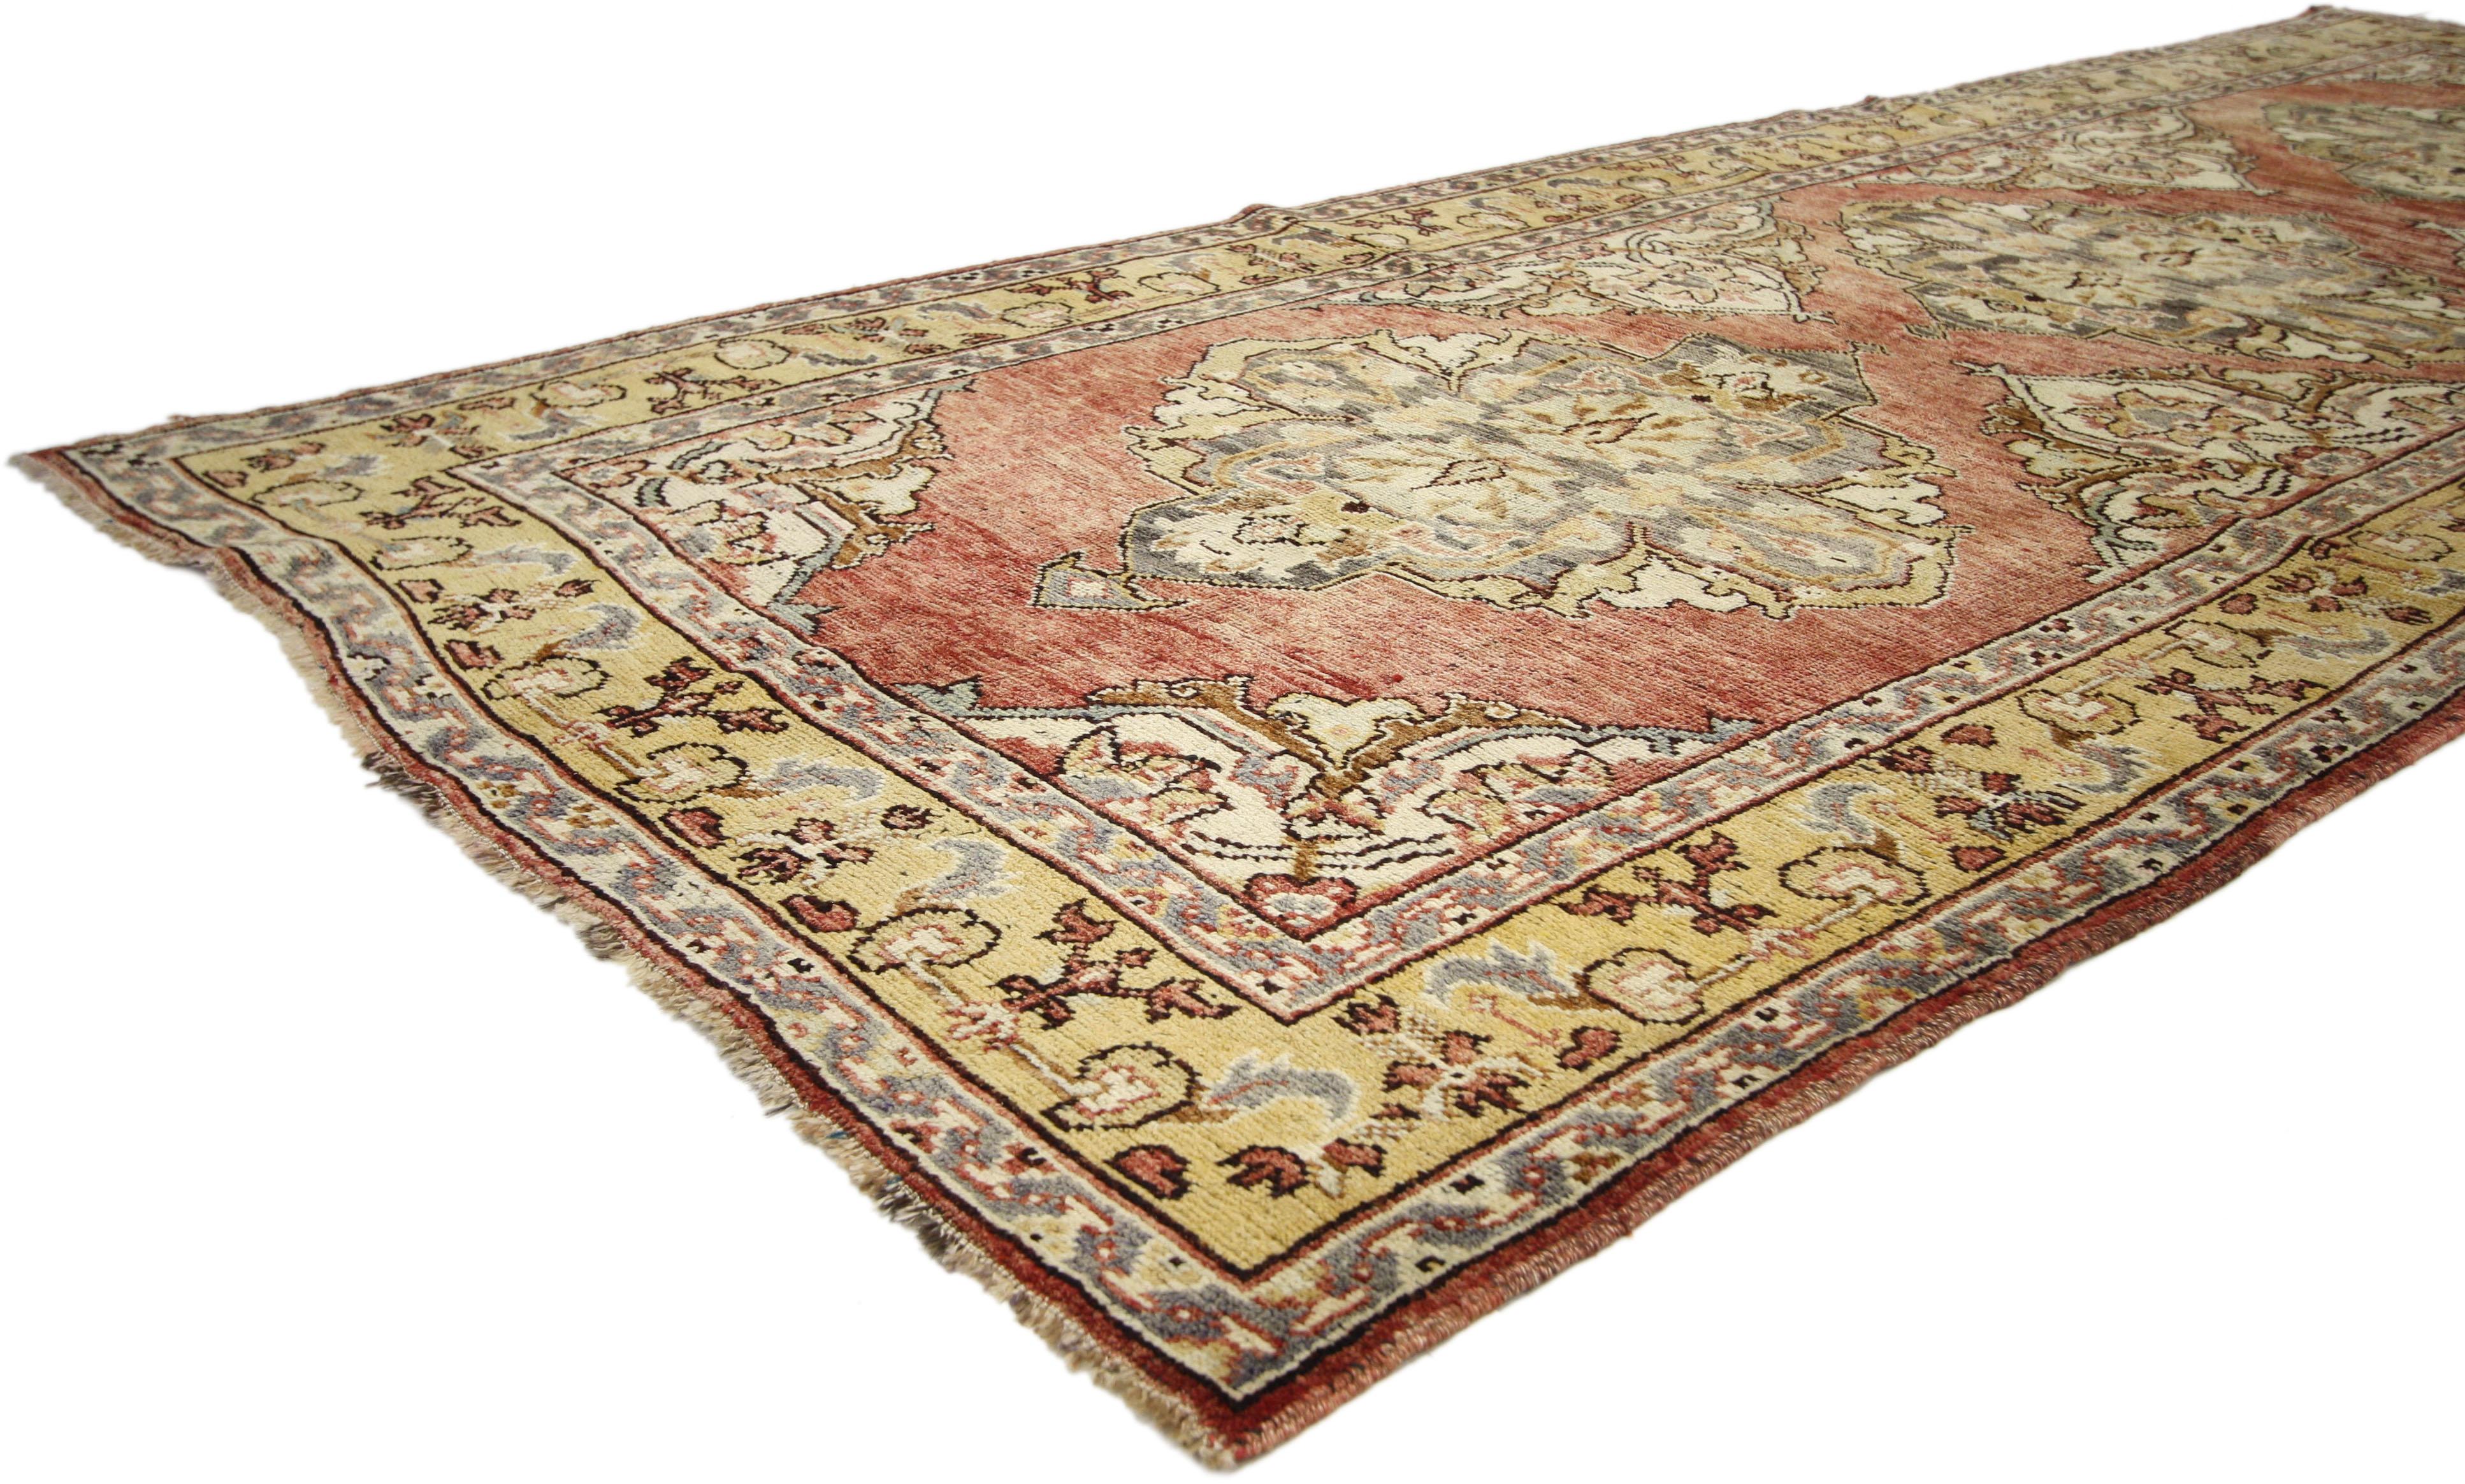 73987, tapis turc vintage Oushak Gallery, large couloir. Chaleureux et accueillant, ce tapis galerie Oushak turc vintage en laine nouée à la main présente trois médaillons ornés dans un champ rouge abrash avec un motif floral sur toute la surface.